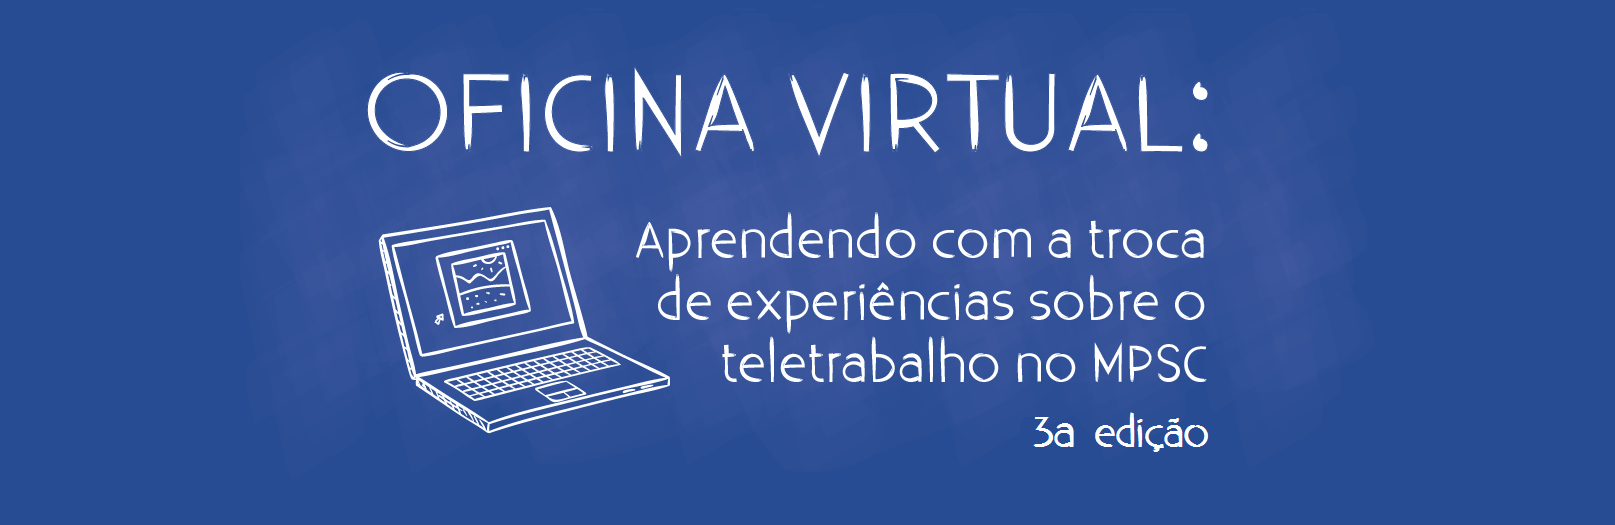 CURSO A DISTÂNCIA (INTERNO): 3ª Oficina Virtual "Aprendendo com a troca de experiências sobre o teletrabalho no MPSC" 2019